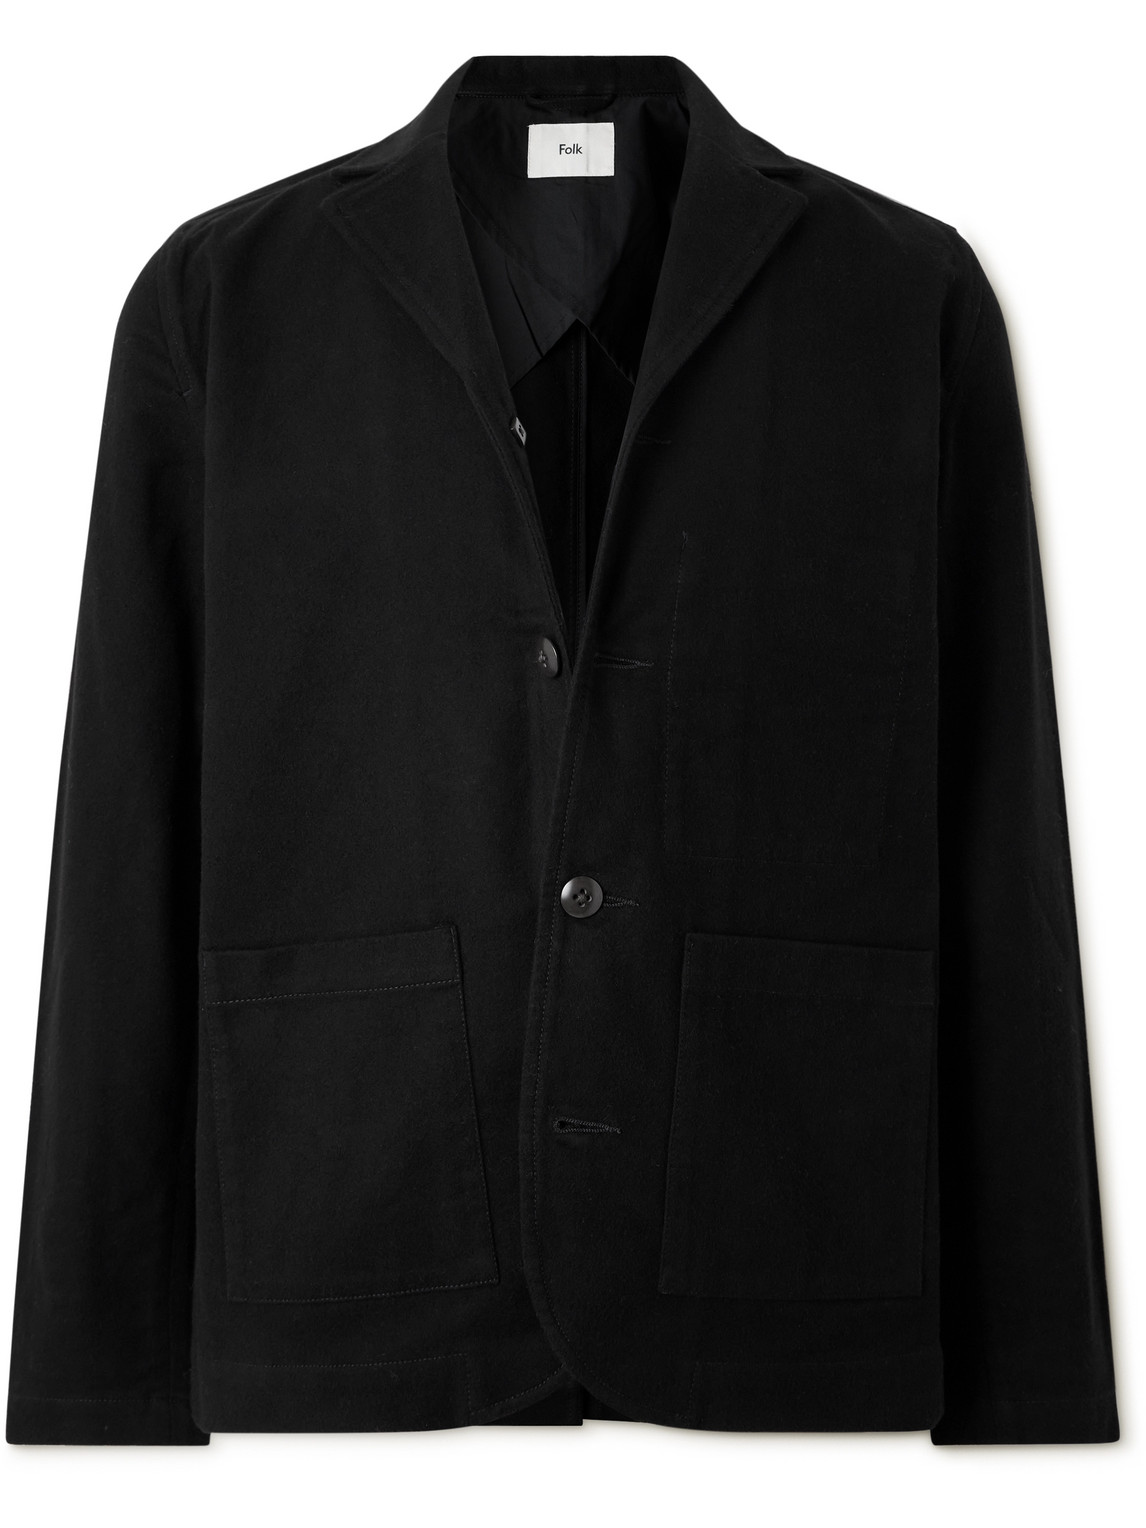 Folk Patch Cotton-moleskin Jacket In Black